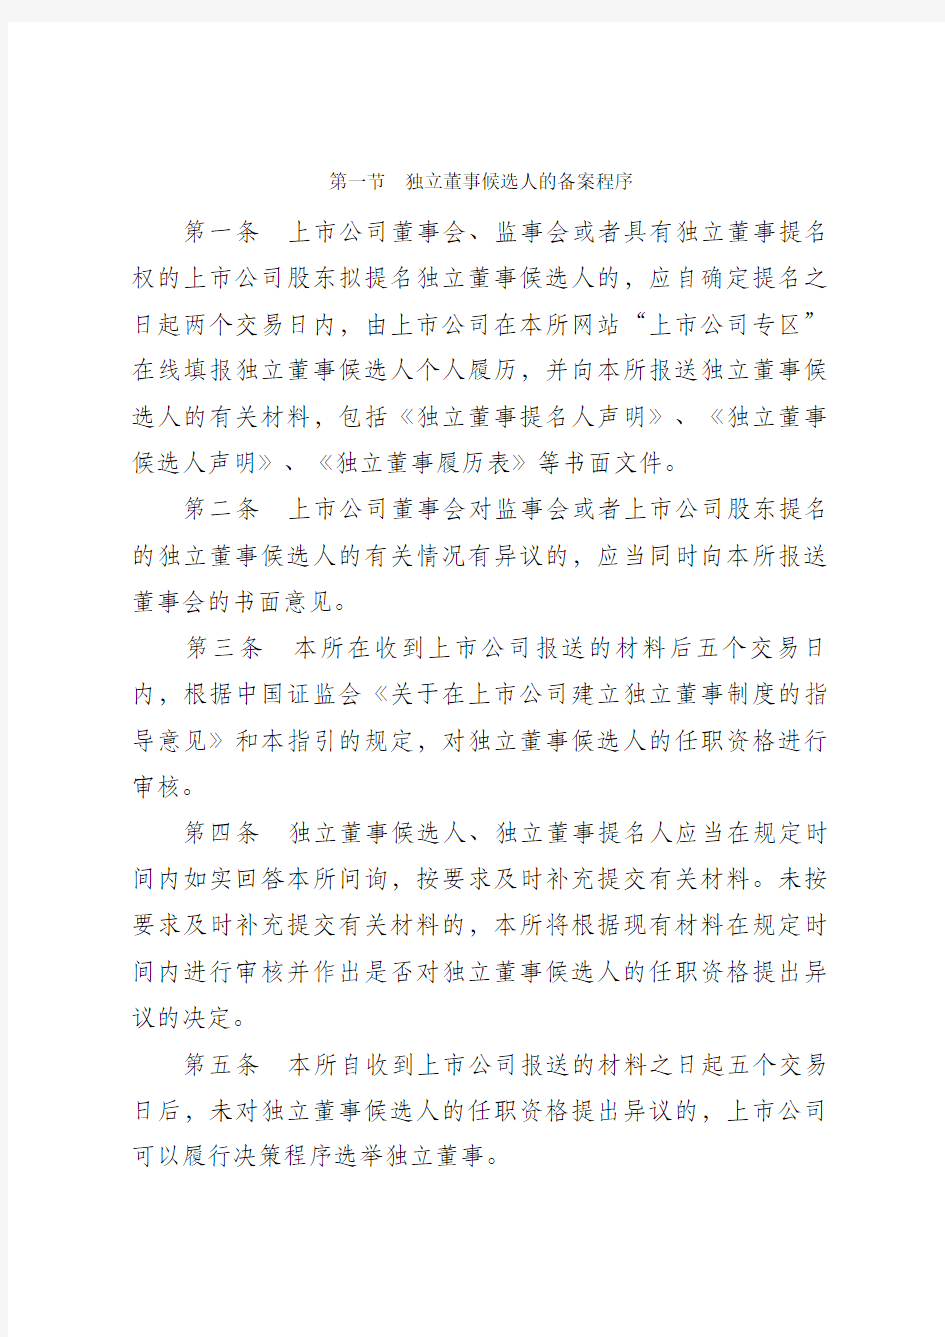 上海证券交易所关于发布《上海证券交易所上市公司独立董事备案及培训工作指引》的通知